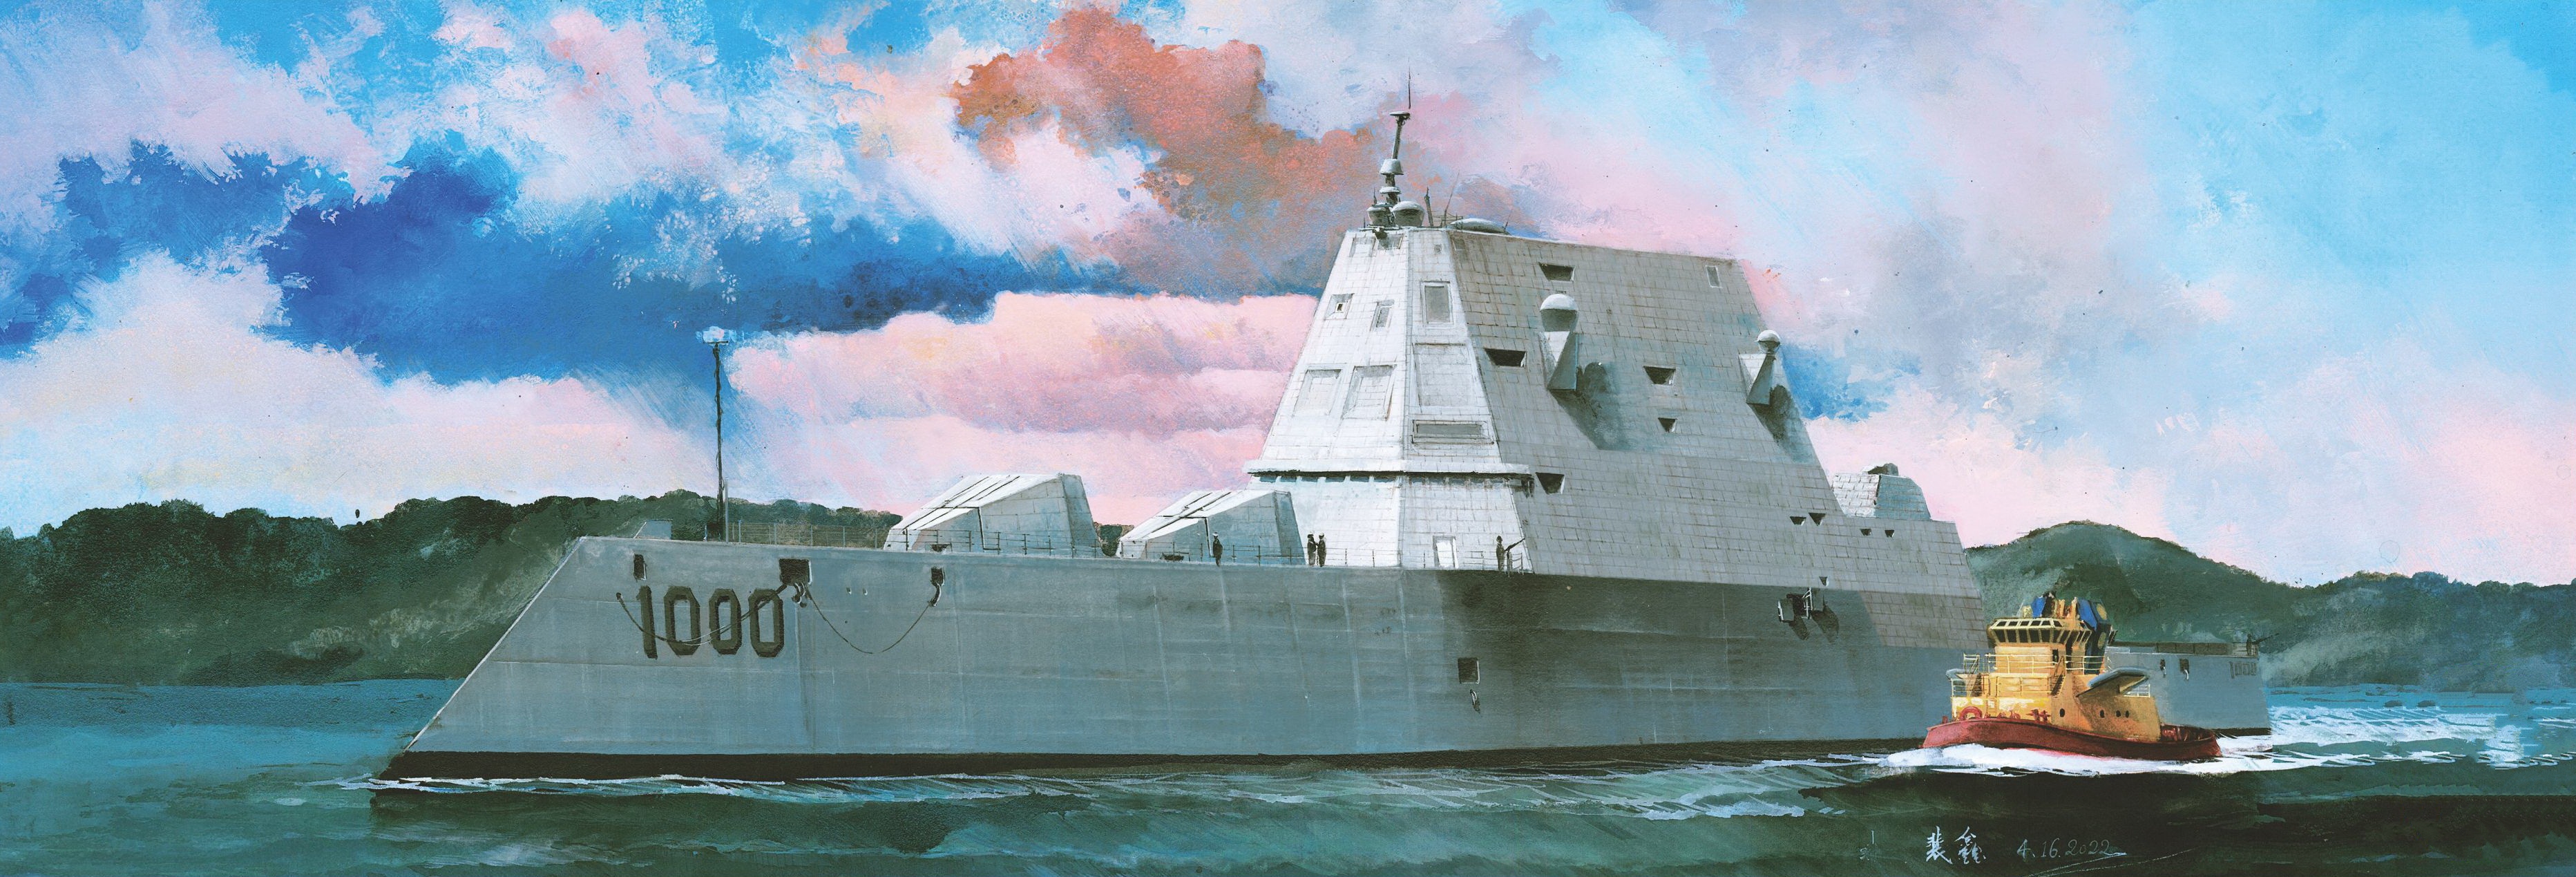 рисунок USS Zumwalt DDG-1000 Missile Destroyer